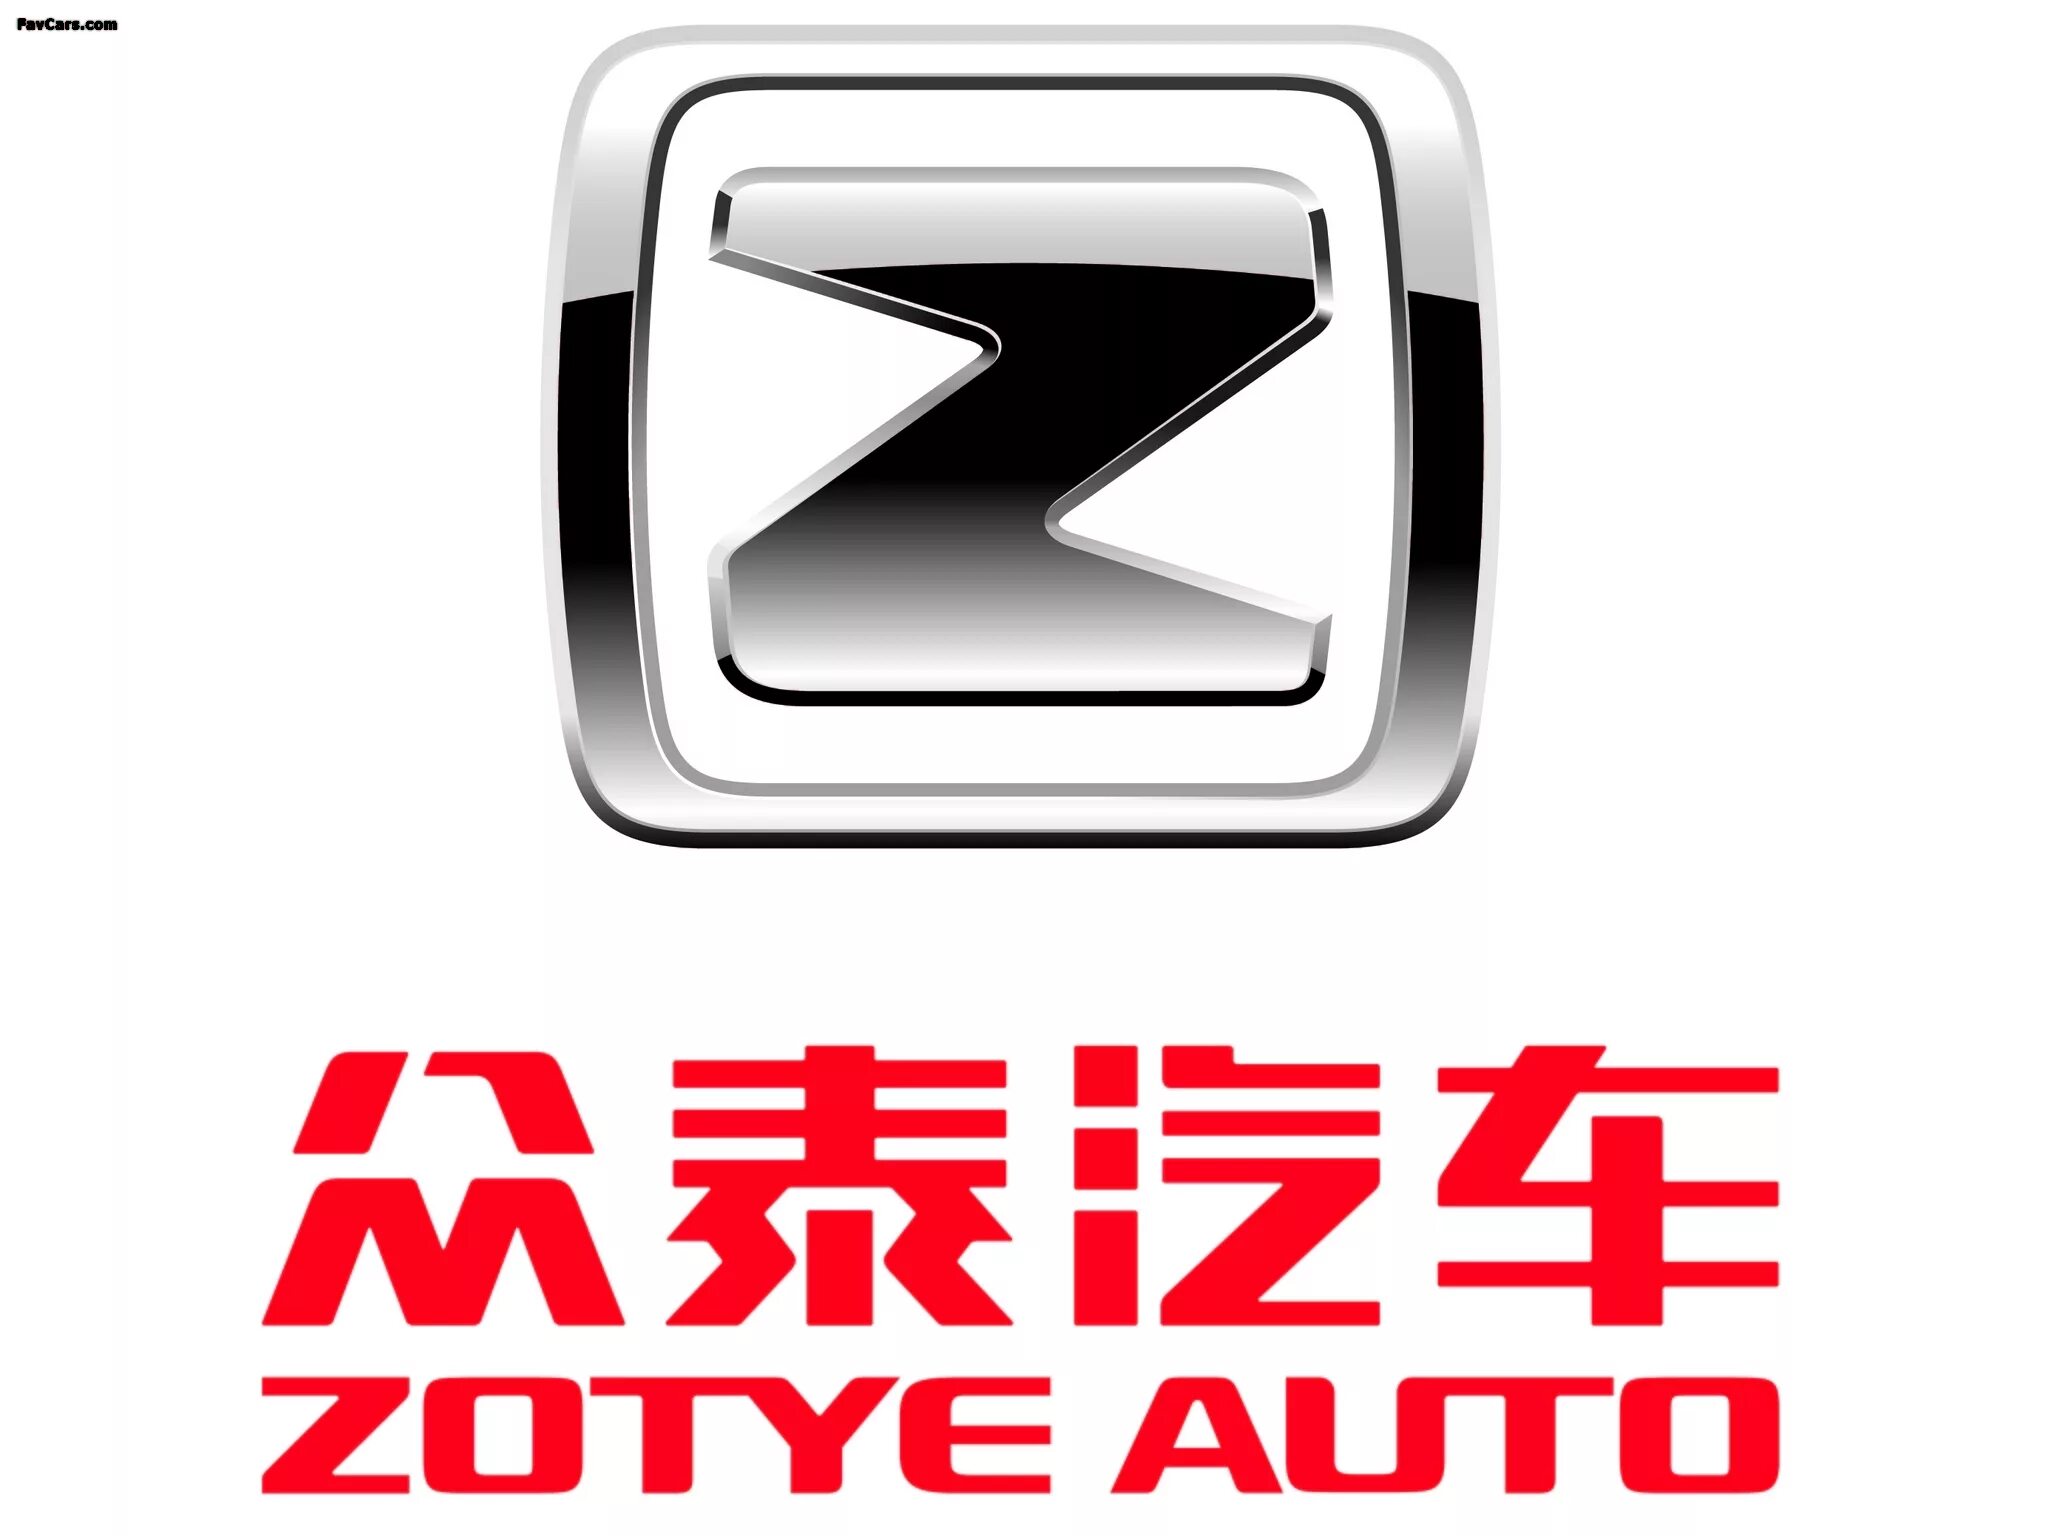 Эмблемы китайских. Автомобильный значок Зотти. Эмблема Zotye t600. Логотипы китайских автомобилей. Машина со значком Zotye.